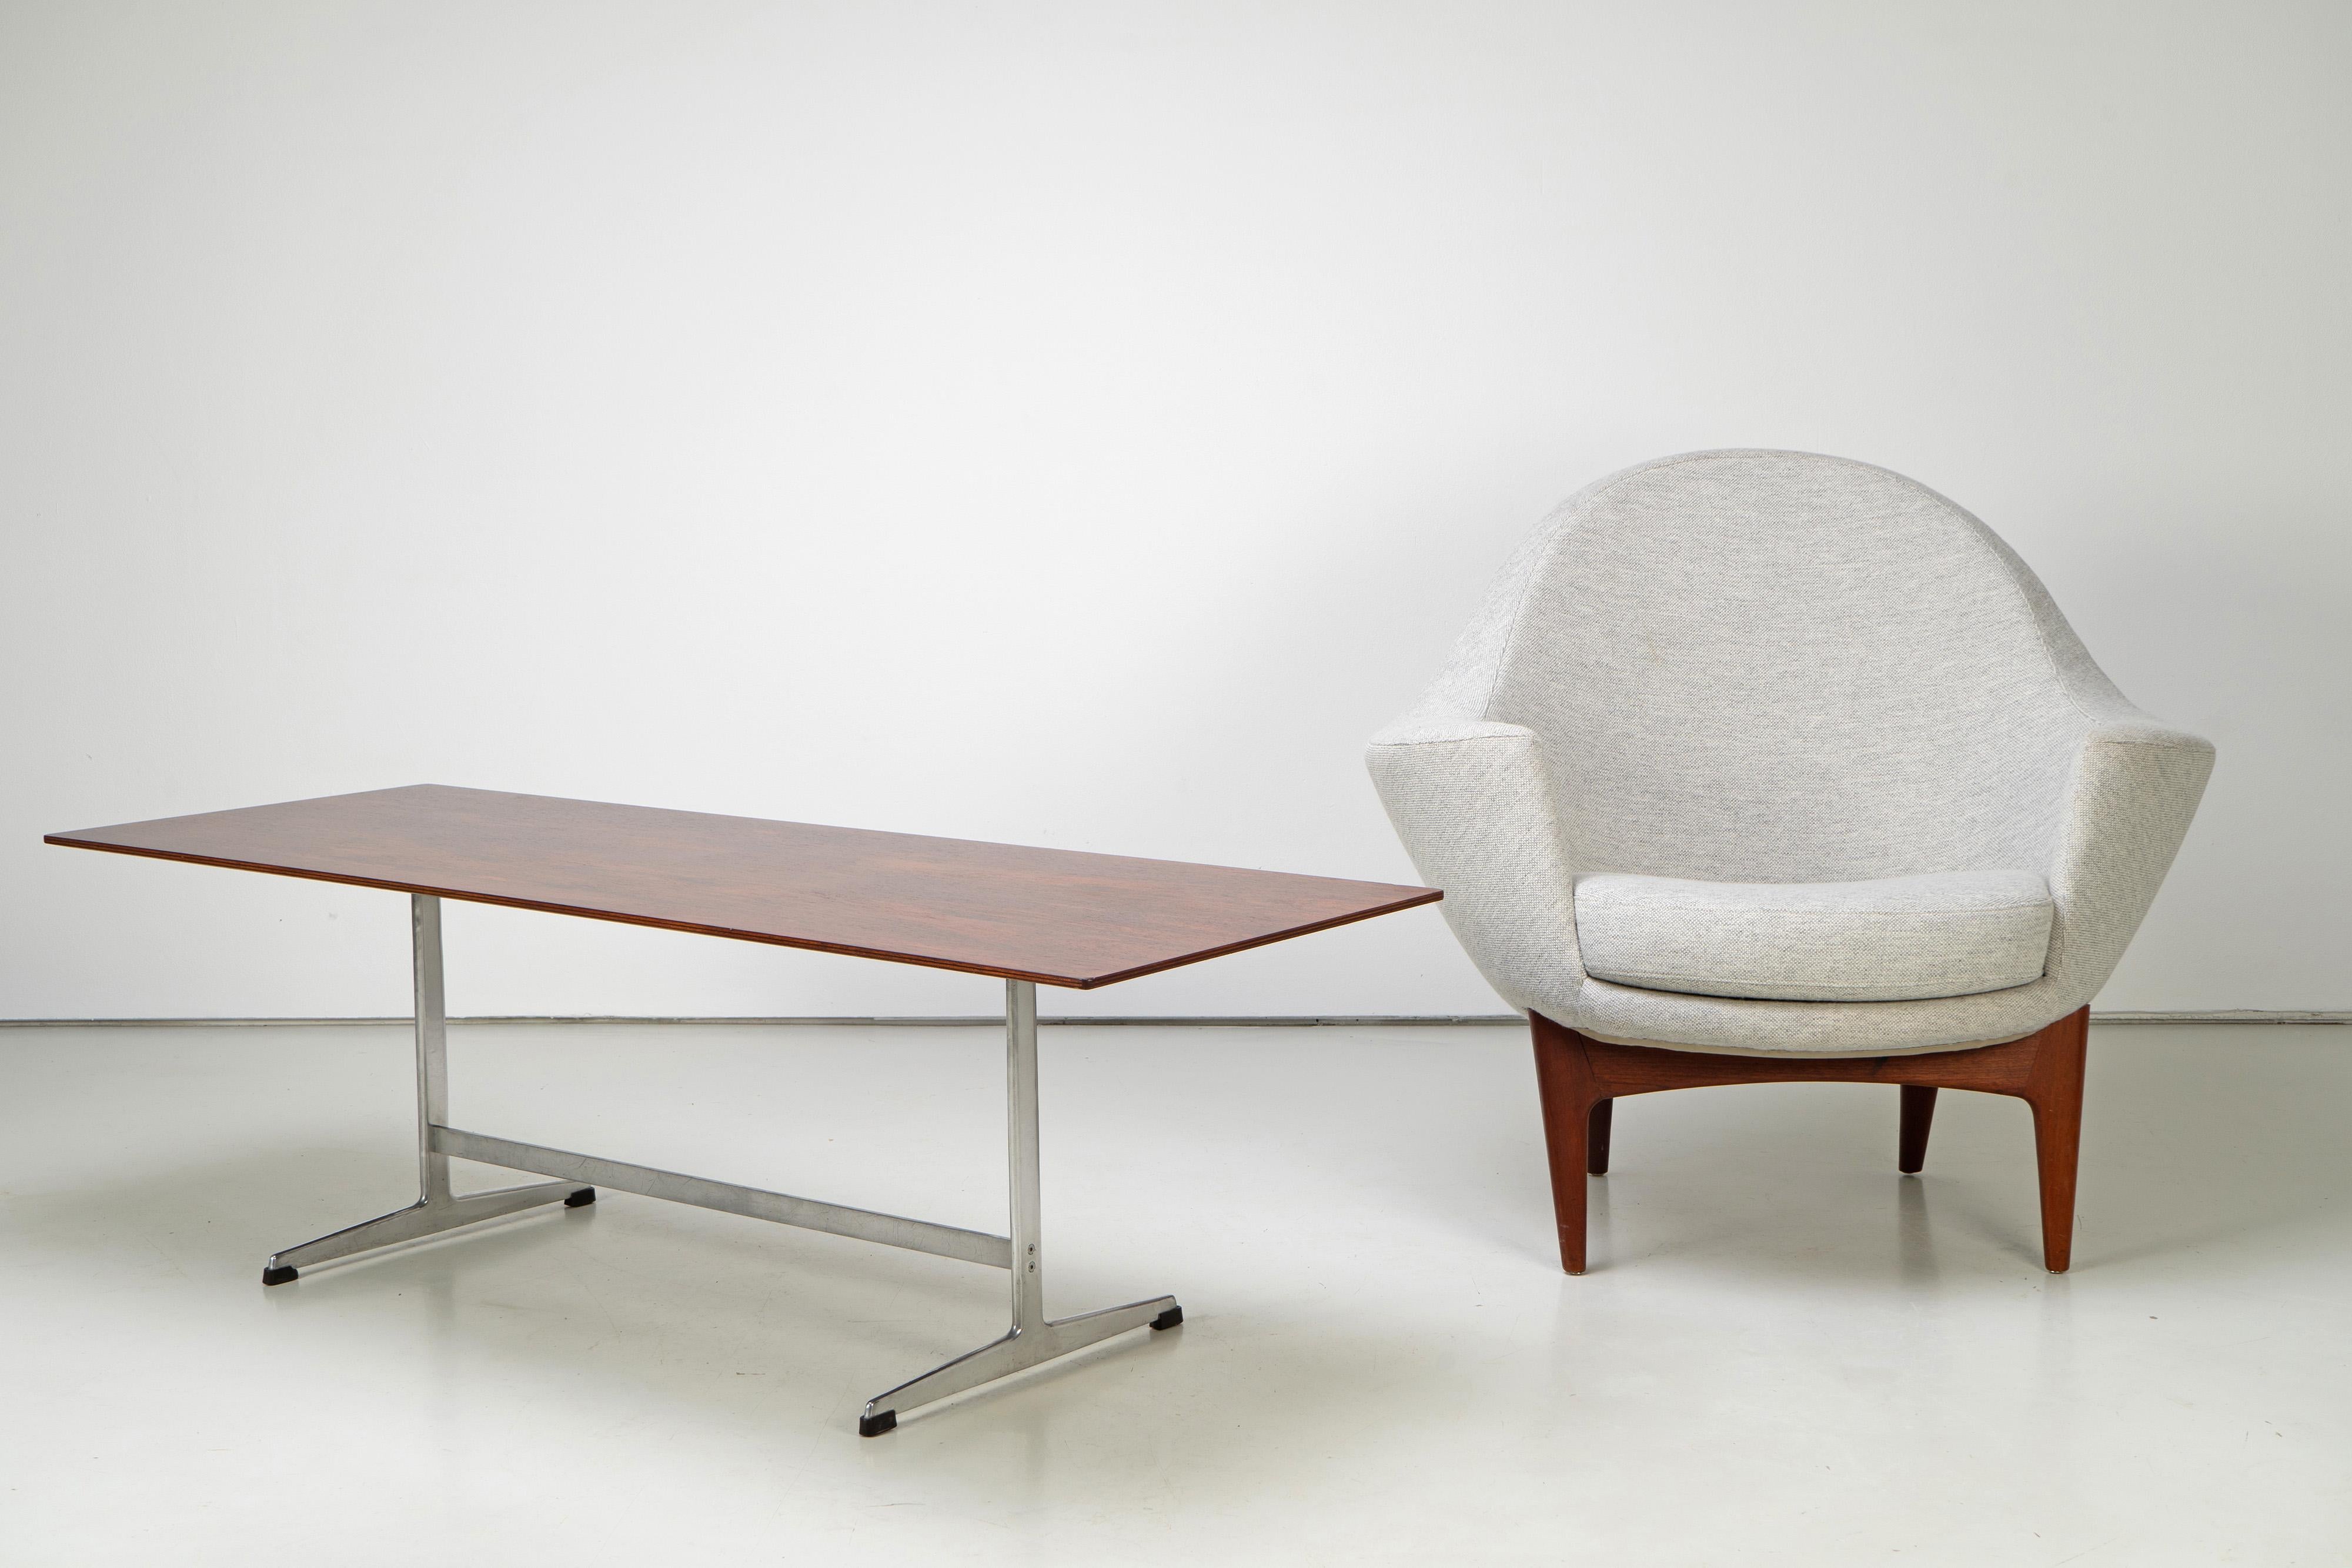 Rare table basse d'Arne Jacobsen, fabriquée dans les années 1960. Cette table basse est vendue avec un document CITES valide.

Seltener Couchtisch von Arne Jacobsen, hergestellt in den 1960er Jahren. Dieser Couchtisch wird mit gültigem